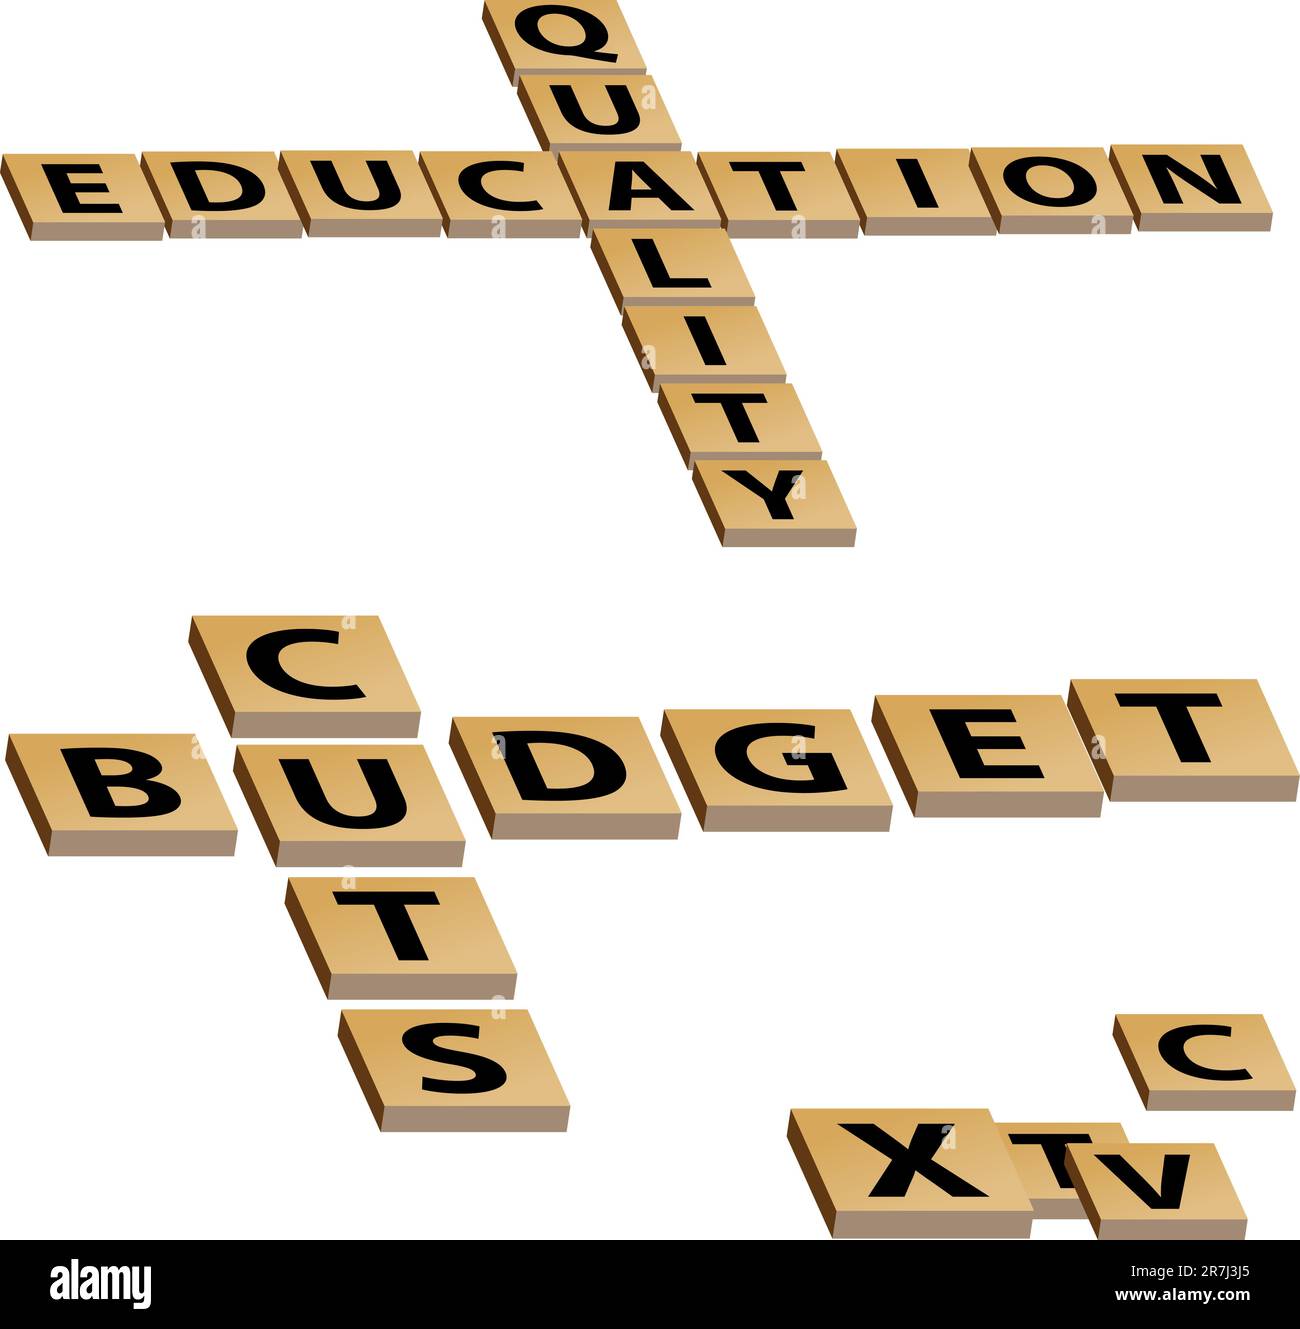 Una immagine di una educazione di qualità dei tagli al budget cruciverba. Illustrazione Vettoriale